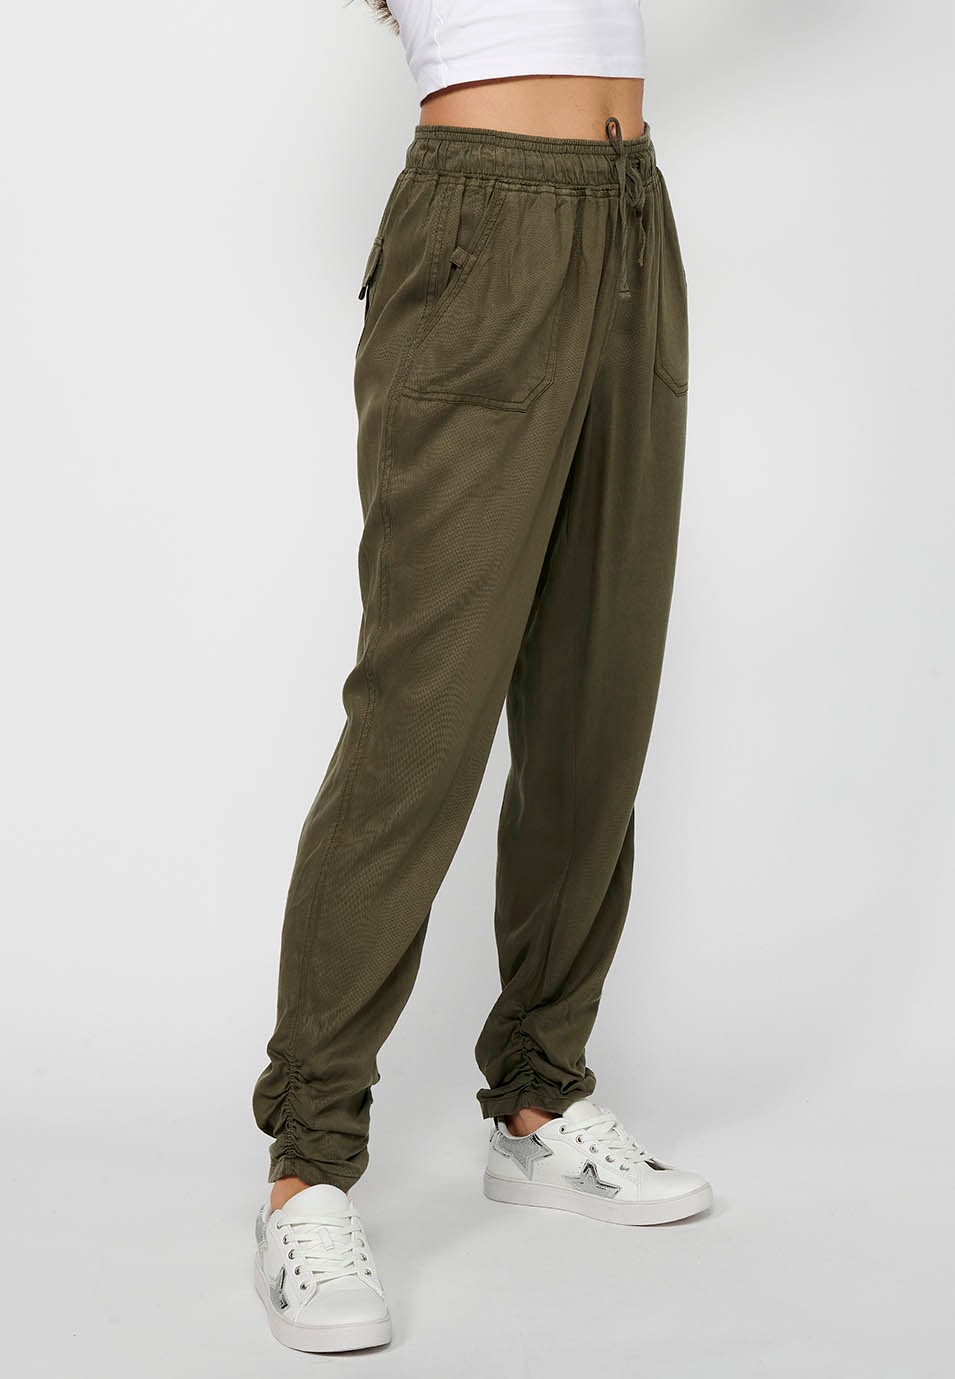 Pantalon de jogging long avec finition bouclée et taille caoutchoutée avec quatre poches, deux poches arrière à rabat de couleur Kaki pour femme 3